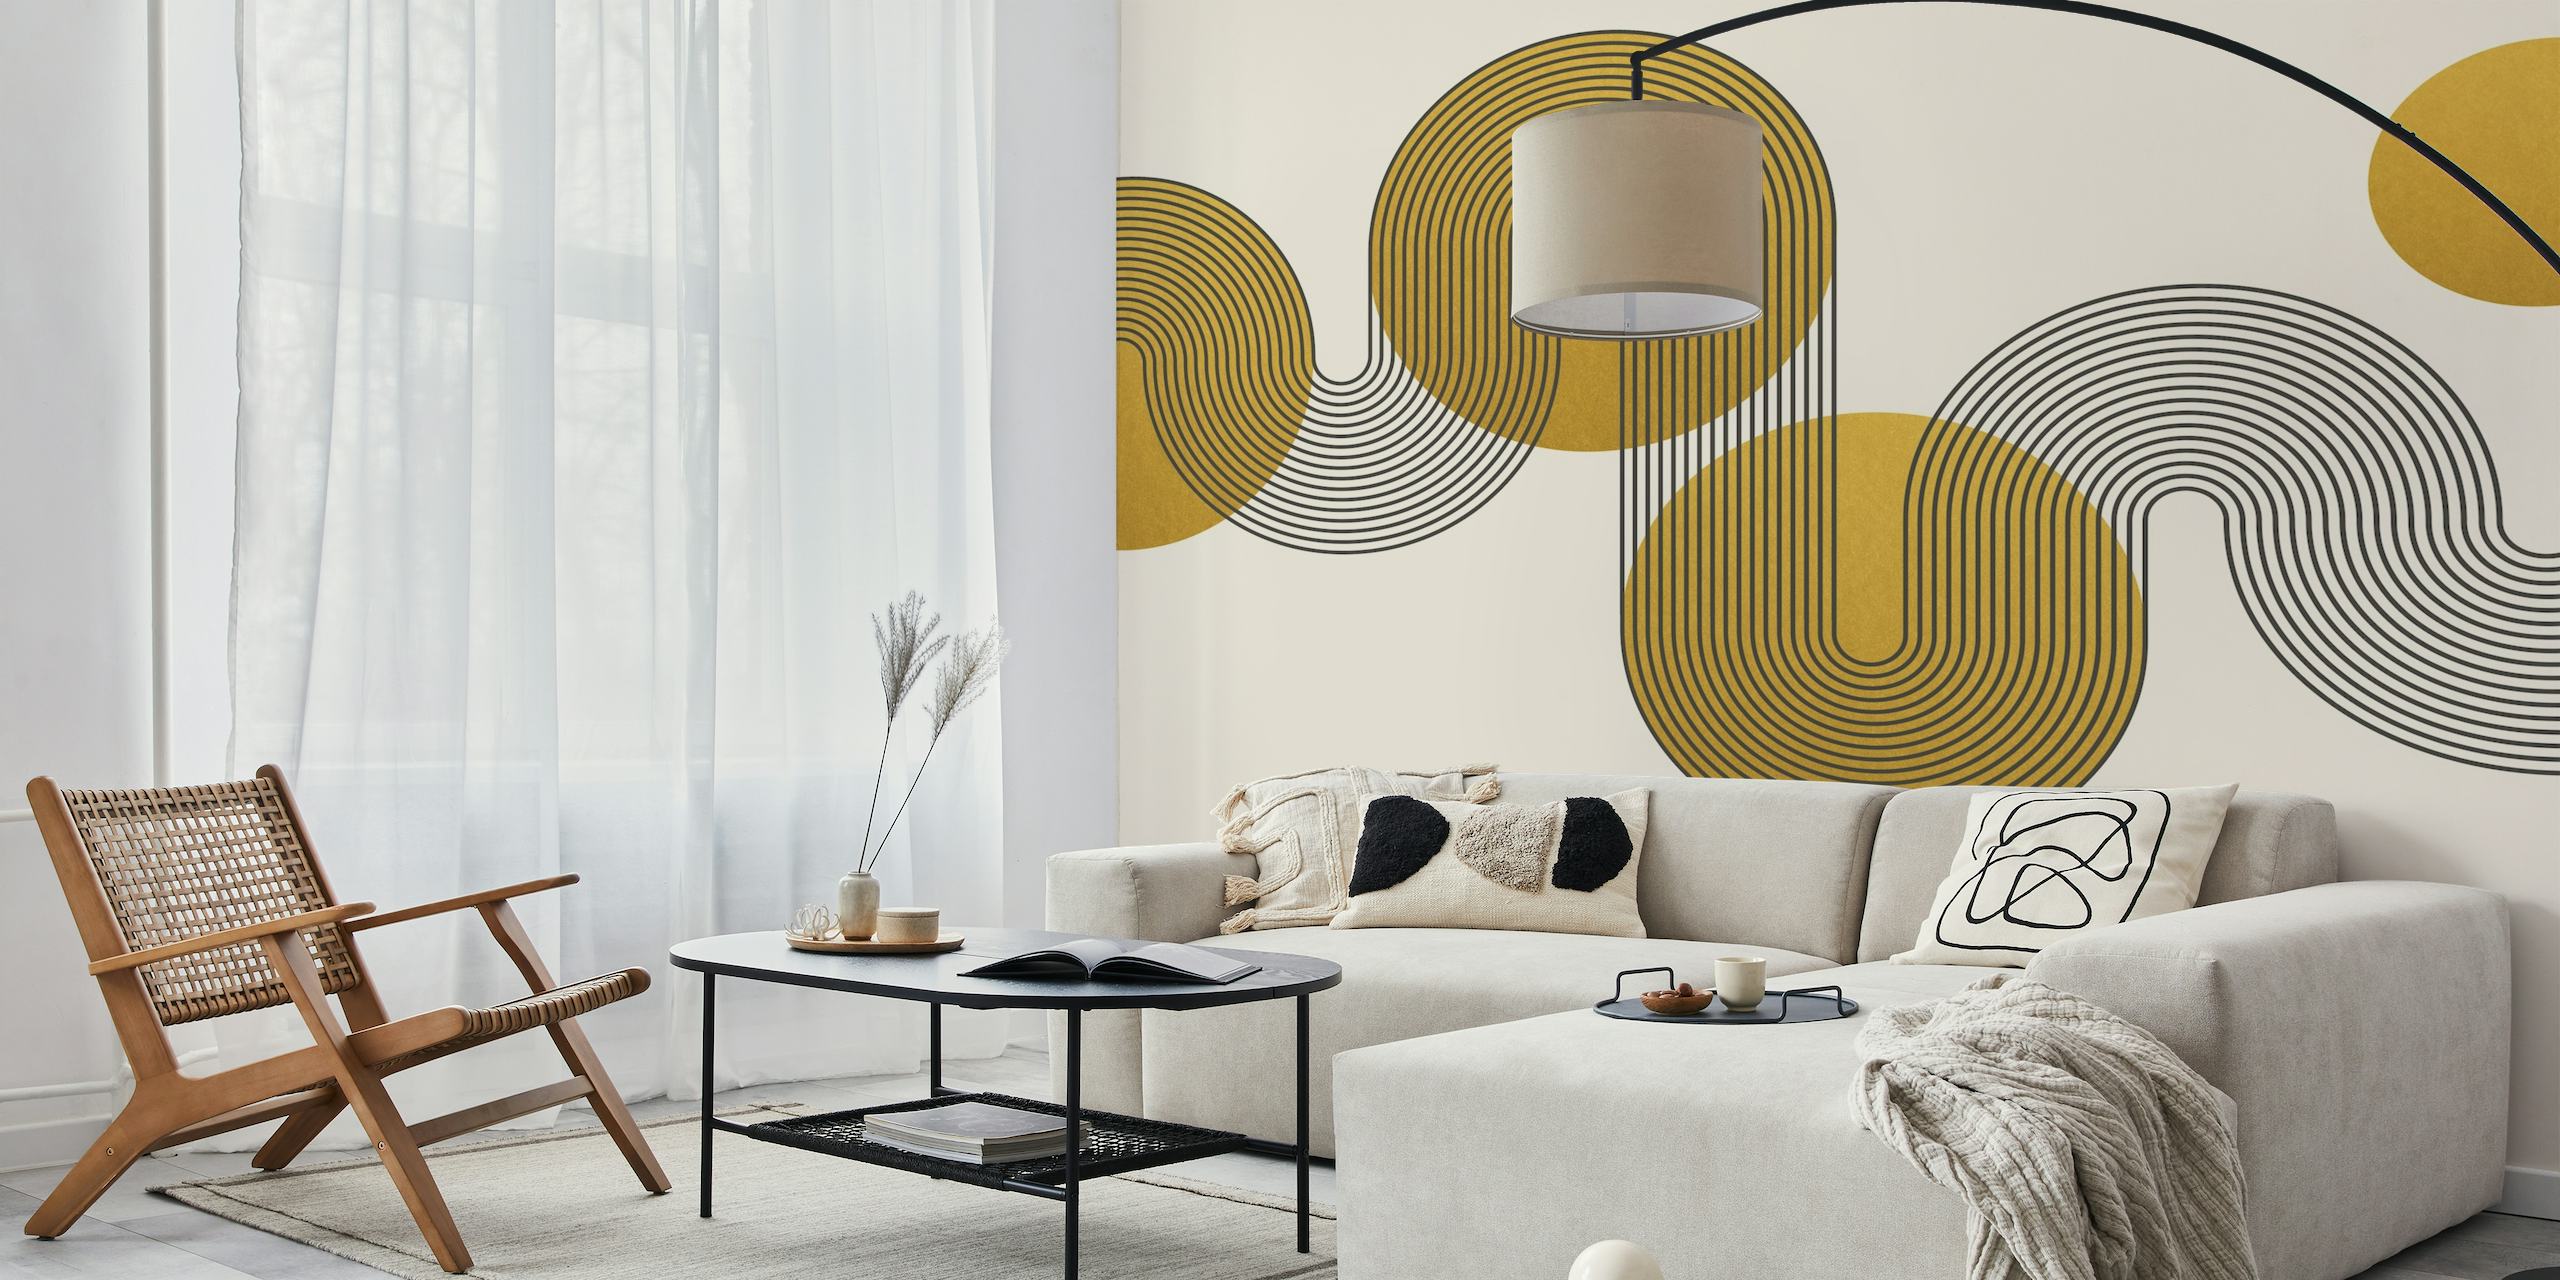 Círculos dourados curvilíneos inspirados na Bauhaus em um fotomural vinílico de fundo neutro